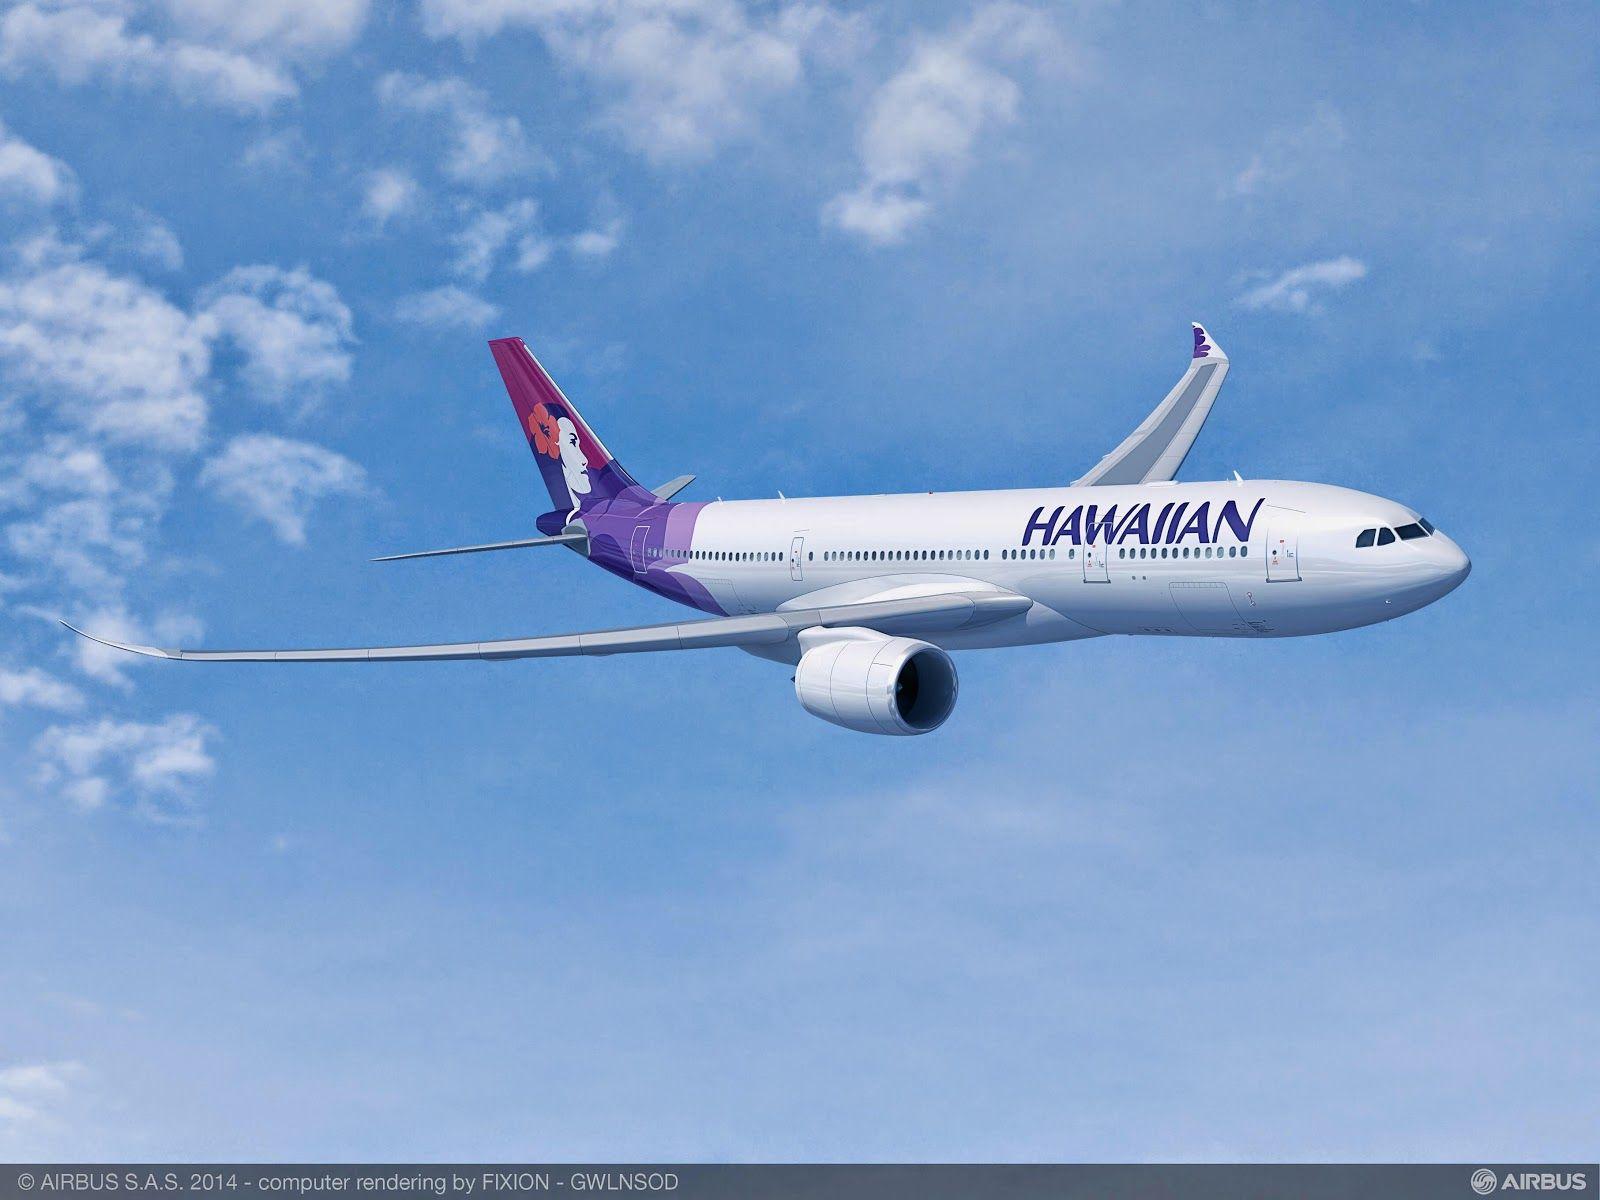 A350 XWB News: Hawaiian Airlines Cancels Their A350 800 Order